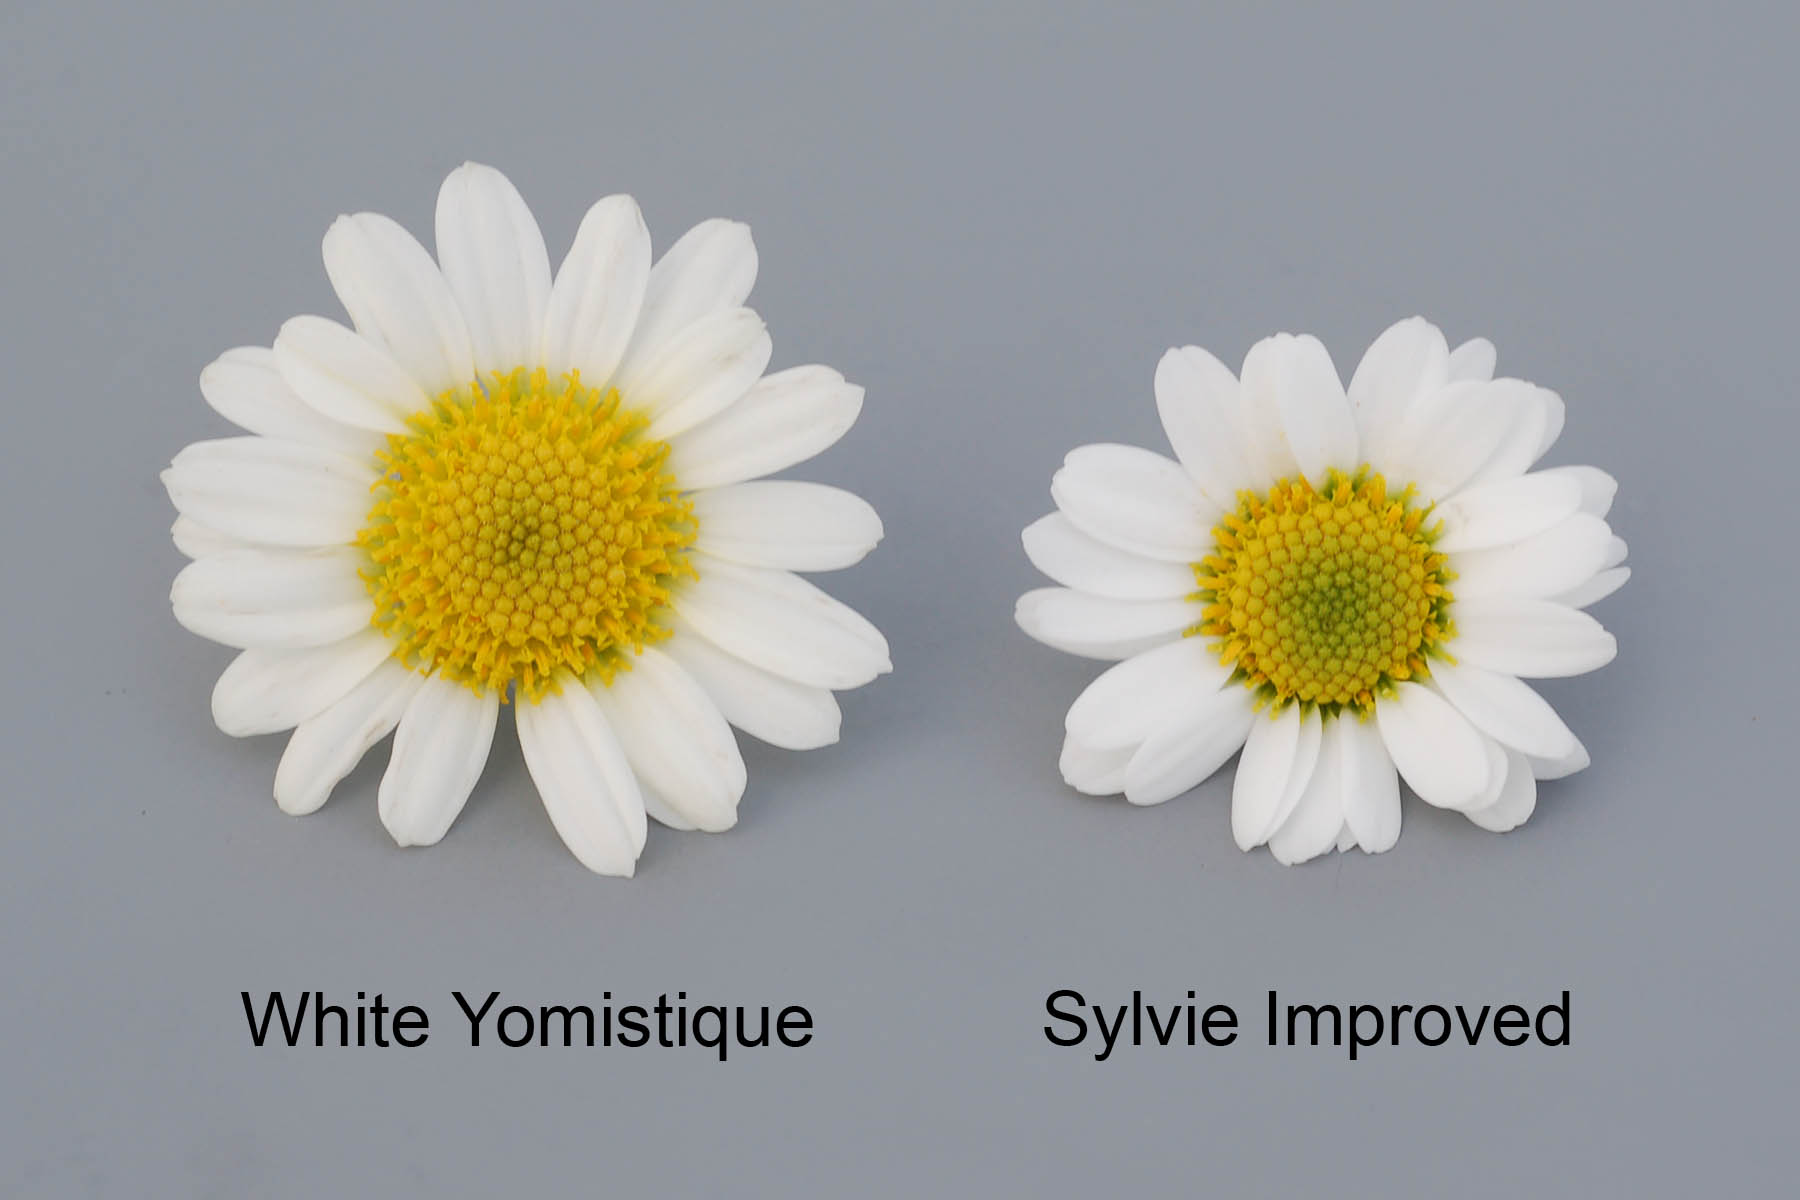 White Yomistique